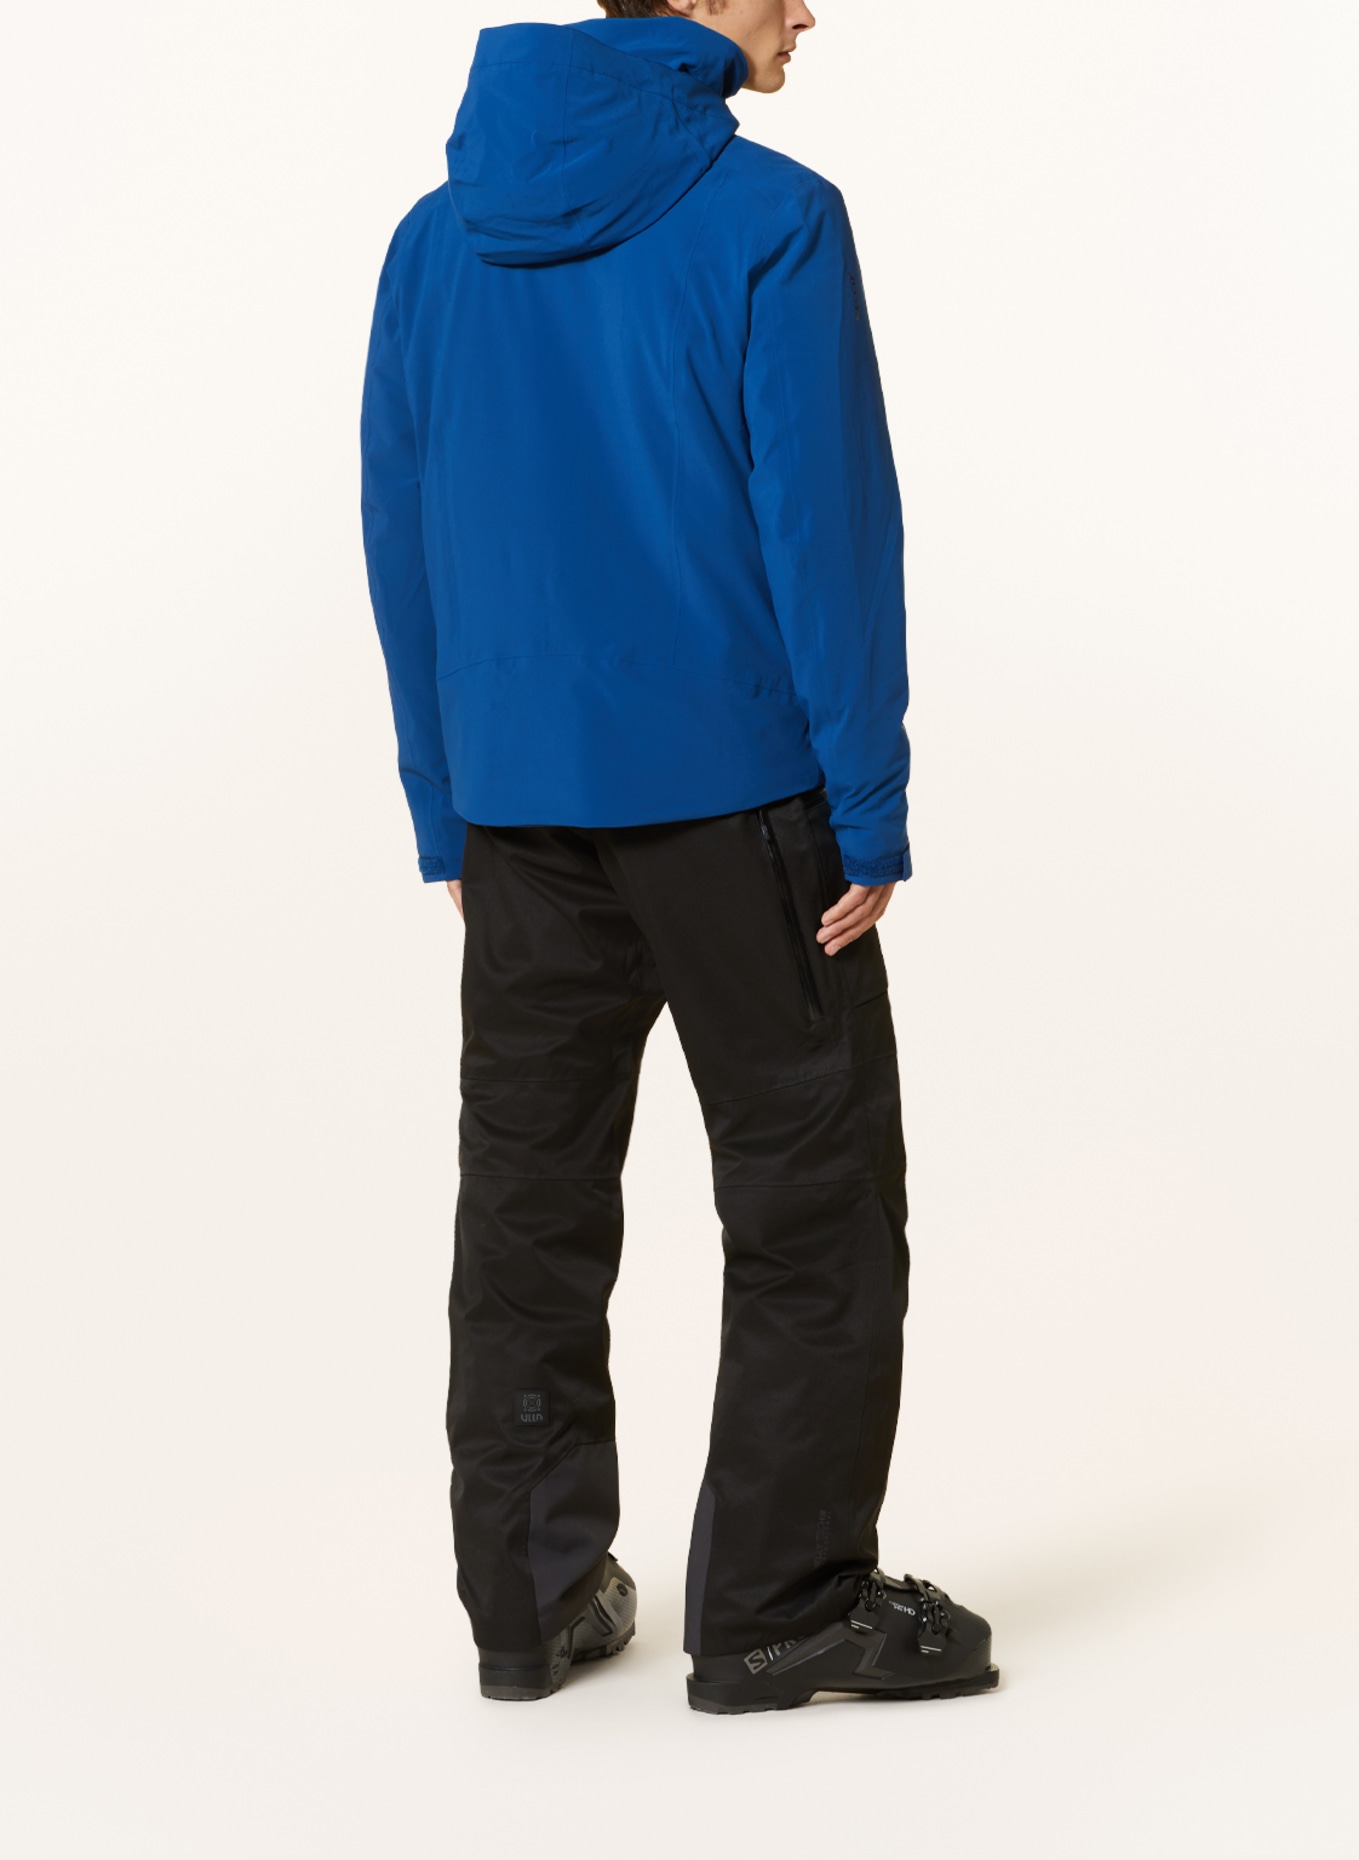 HELLY HANSEN Ski jacket ALPHA 4.0, Color: BLUE (Image 3)